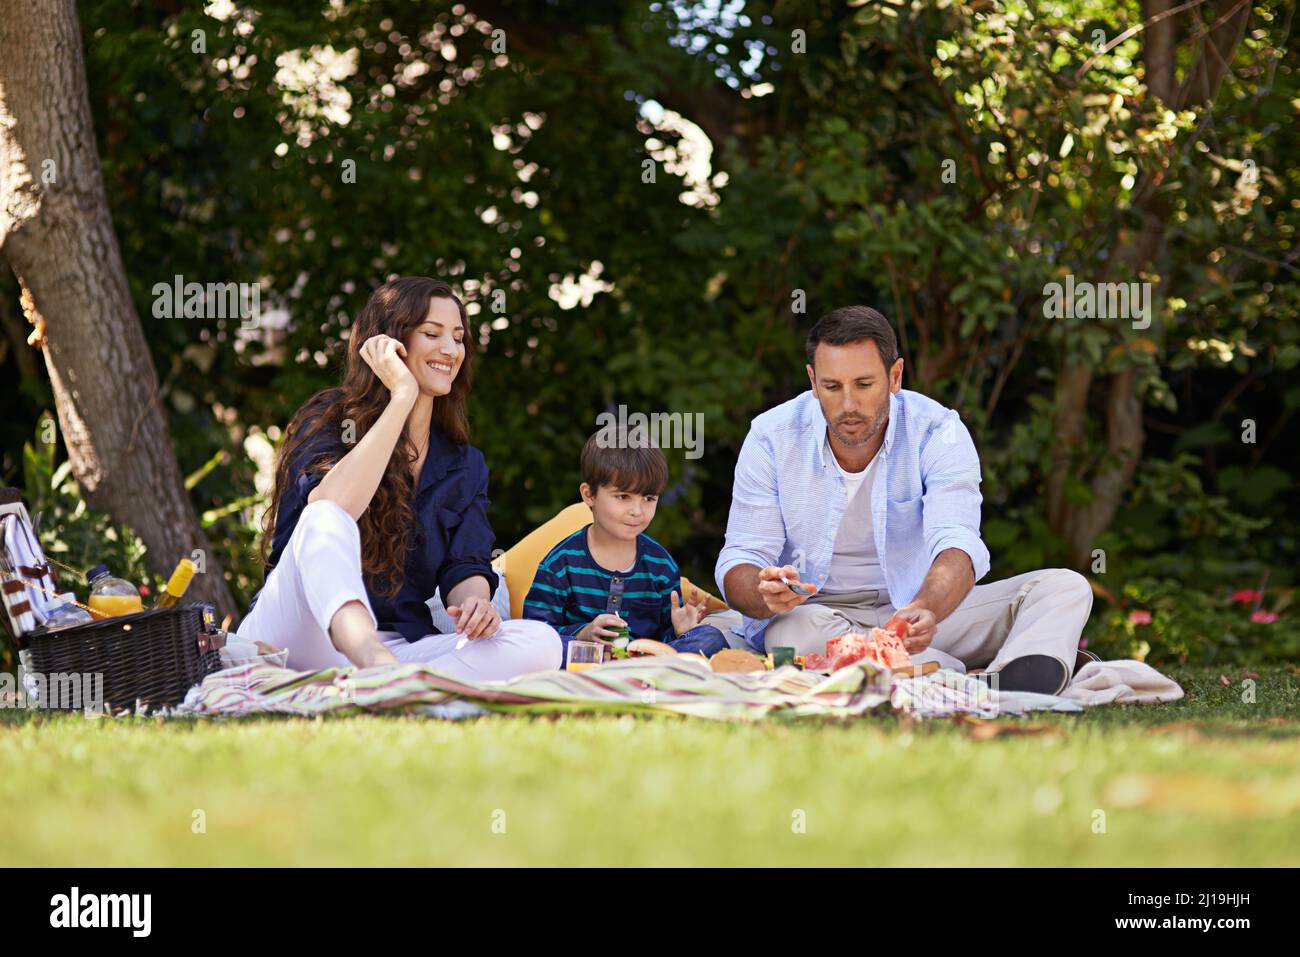 Picknicks wurden für den Sommer gemacht. Aufnahme einer Familie, die zusammen ein Picknick genießt. Stockfoto